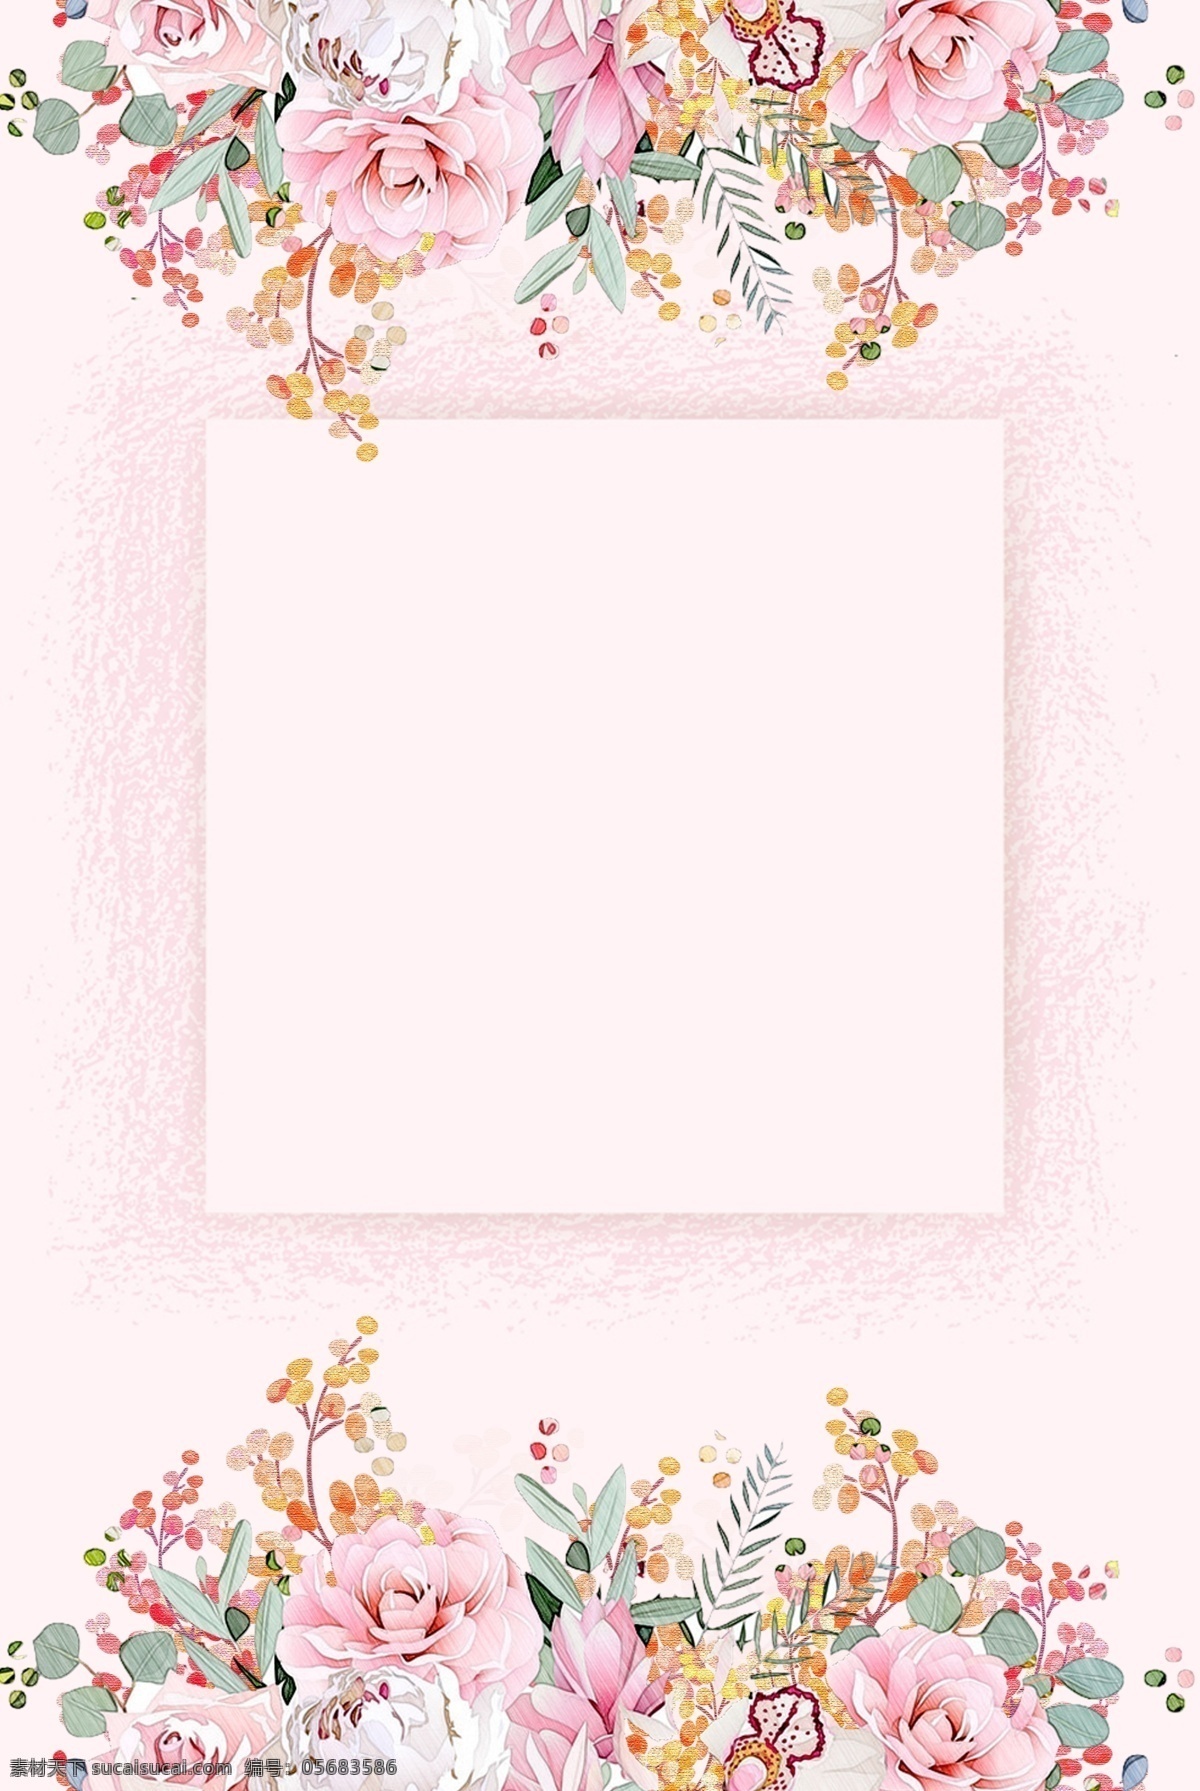 矢量 水彩 手绘 花朵 边框 背景 粉嫩 粉色 海报 花朵边框 花卉 婚礼 婚庆 浪漫 分层